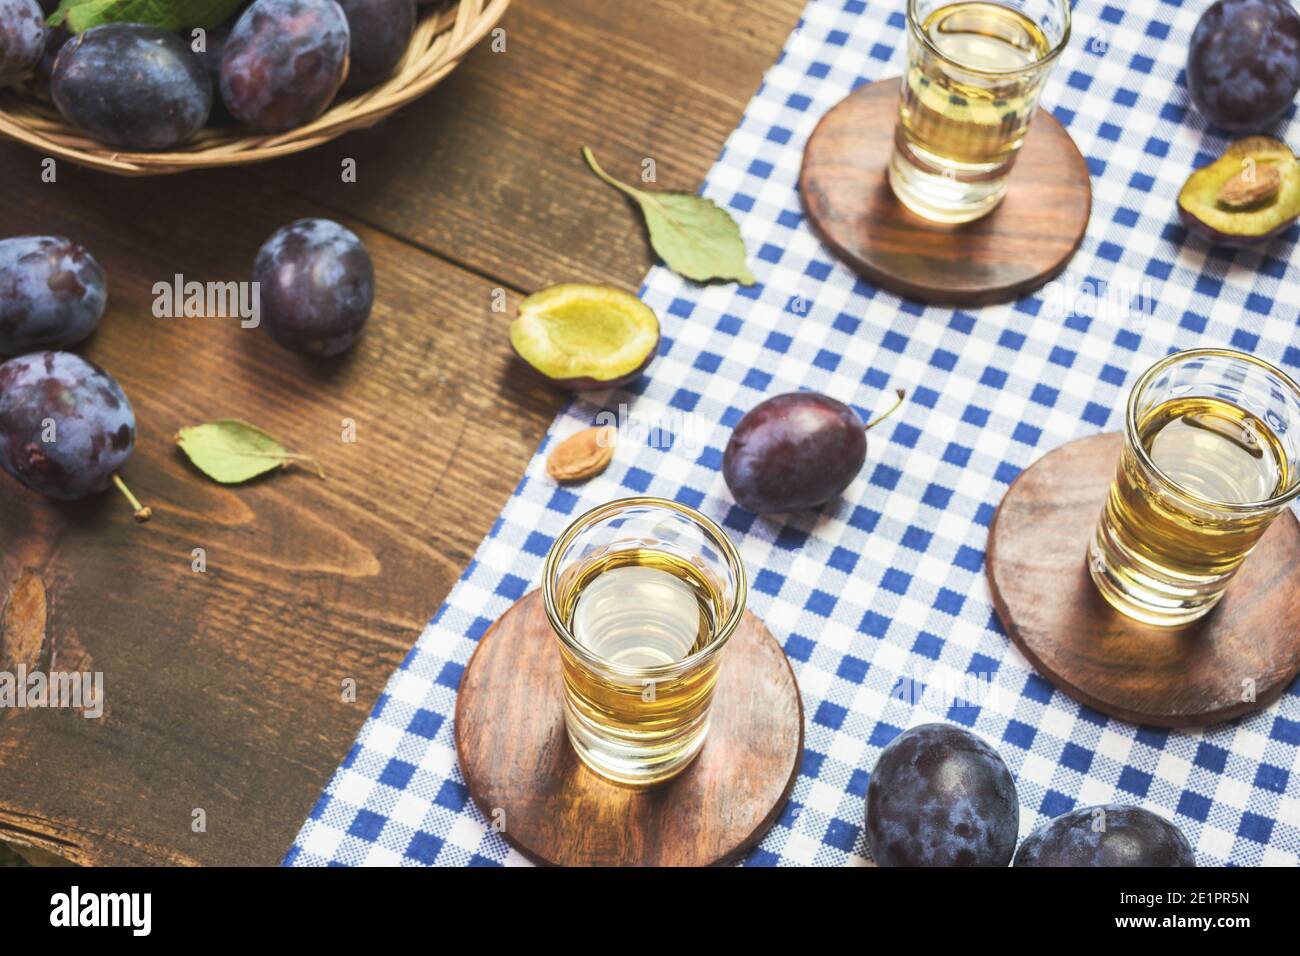 Le rakija, le raki ou le rakia est un cognac de boisson alcoolisée des Balkans à base de fruits fermentés. Rakia de prune sur une table en bois rustique. Banque D'Images